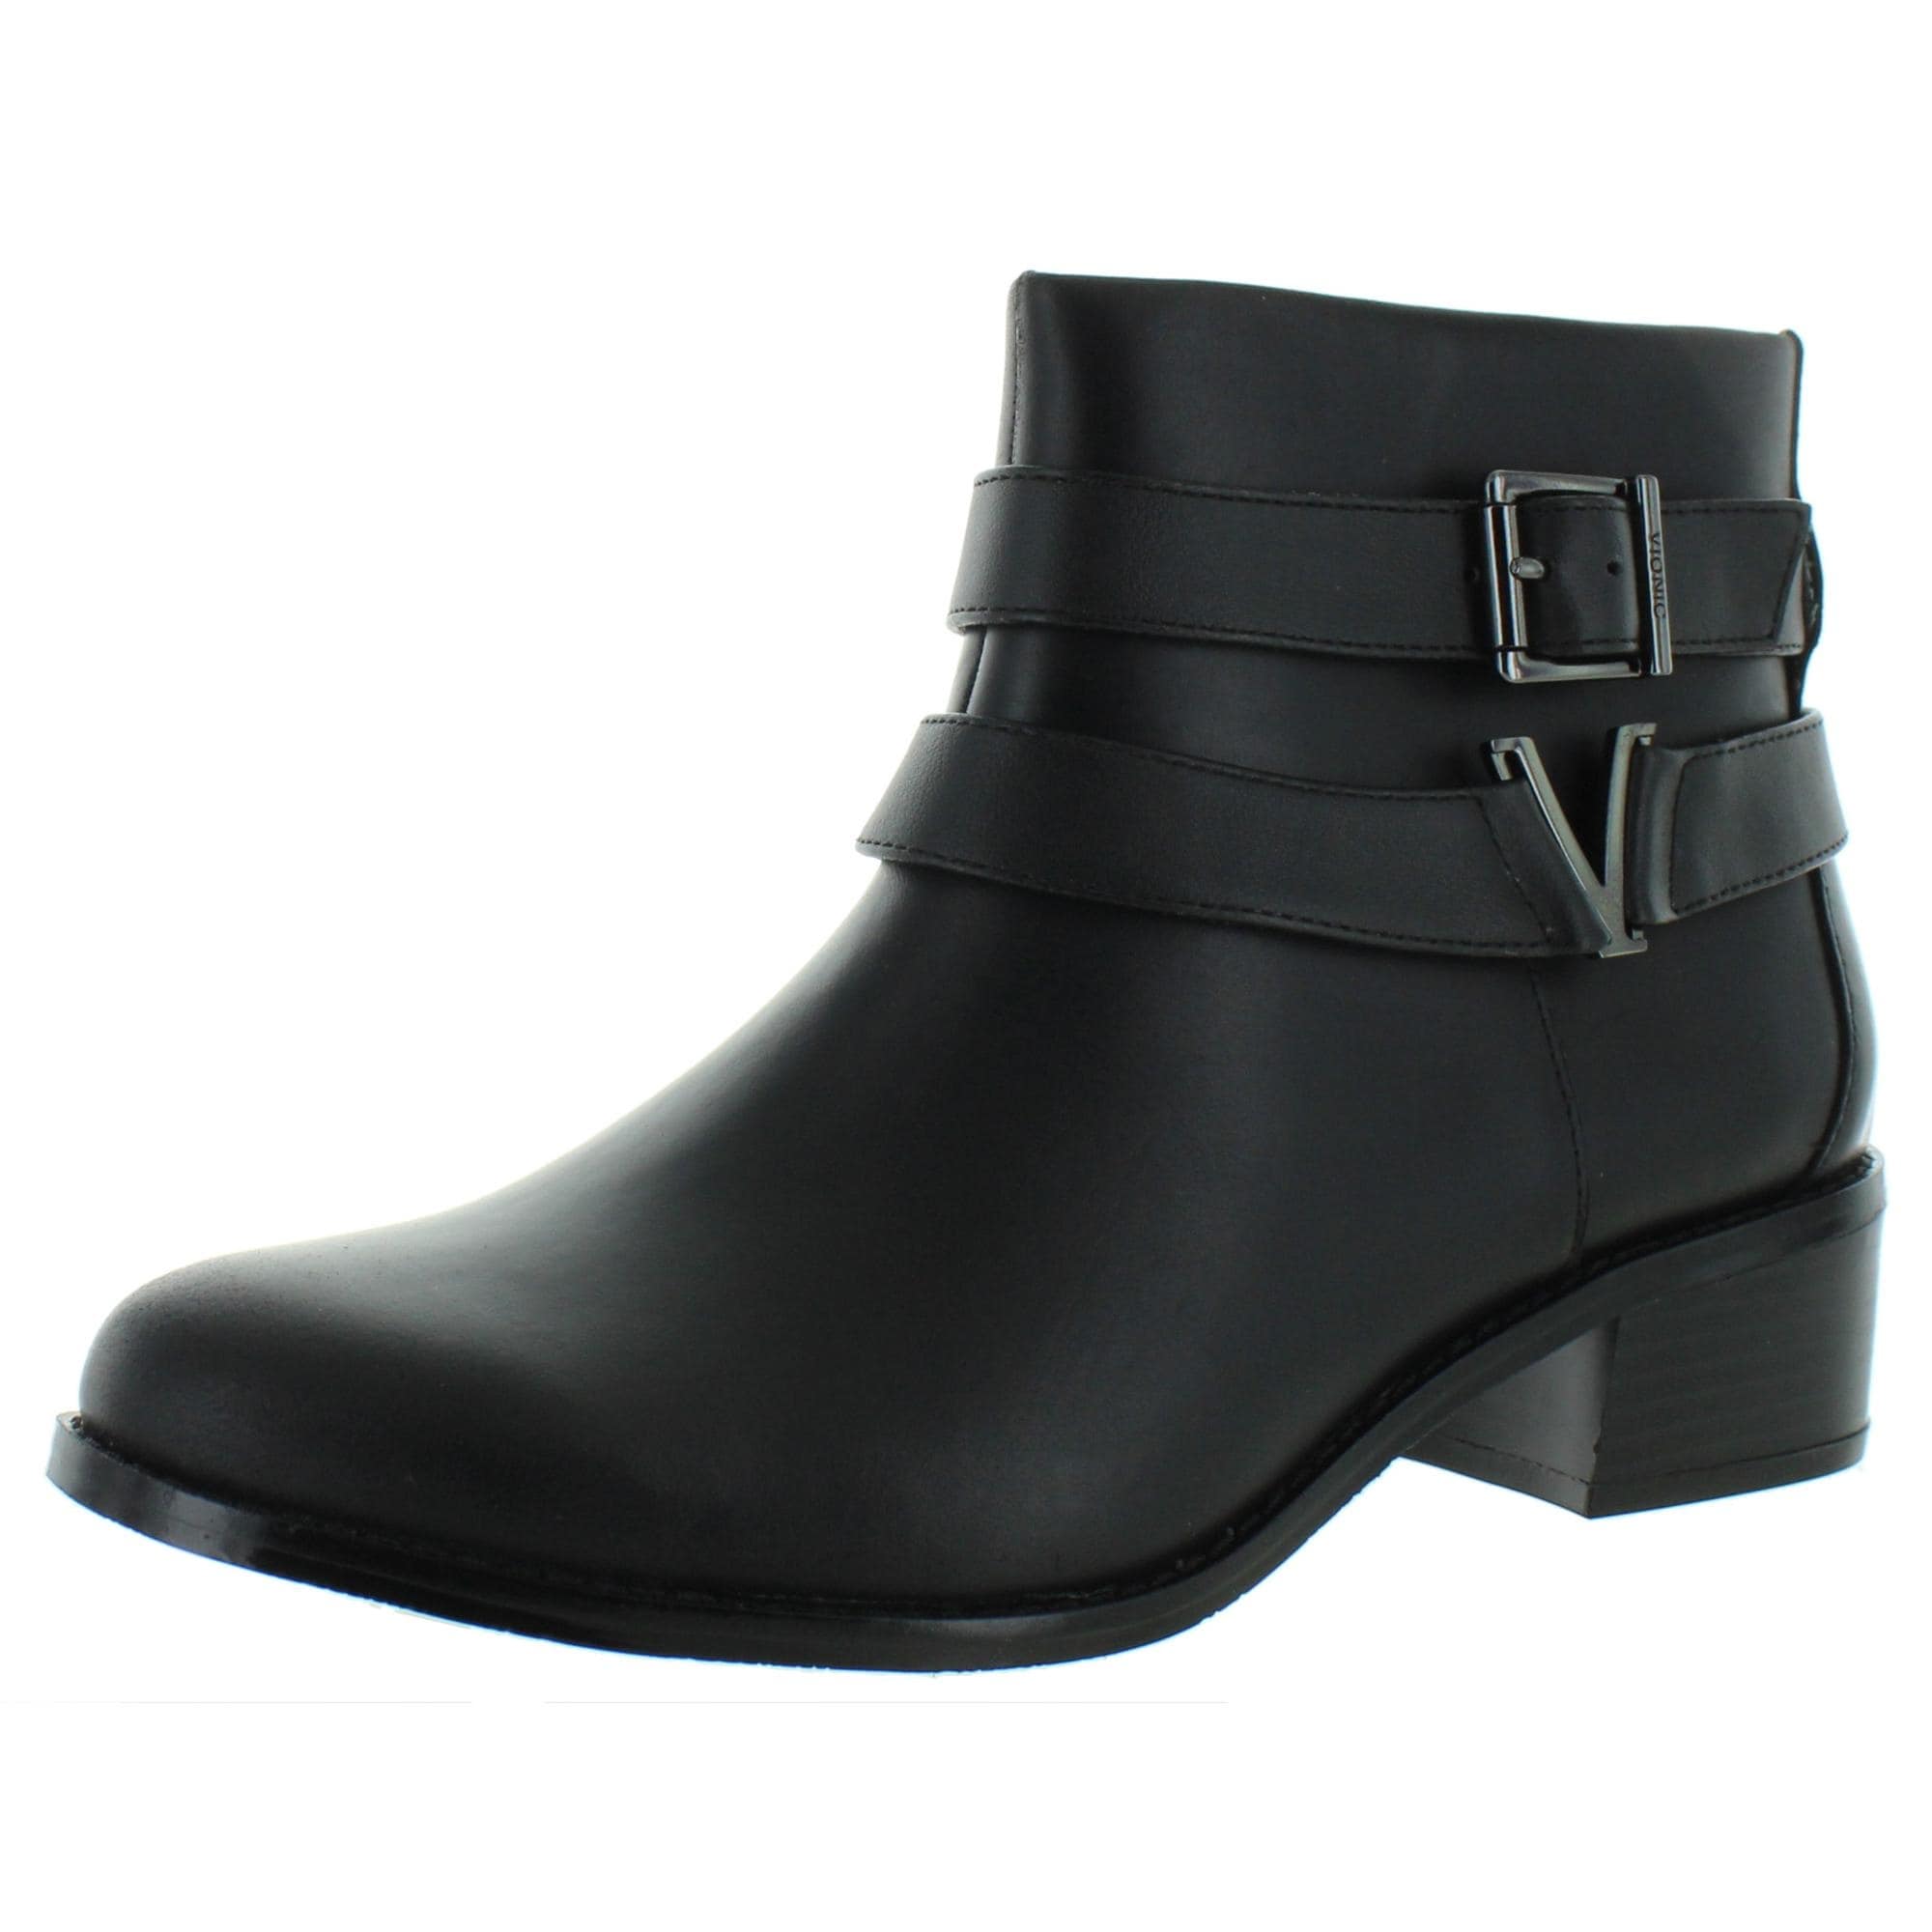 vionic black boots